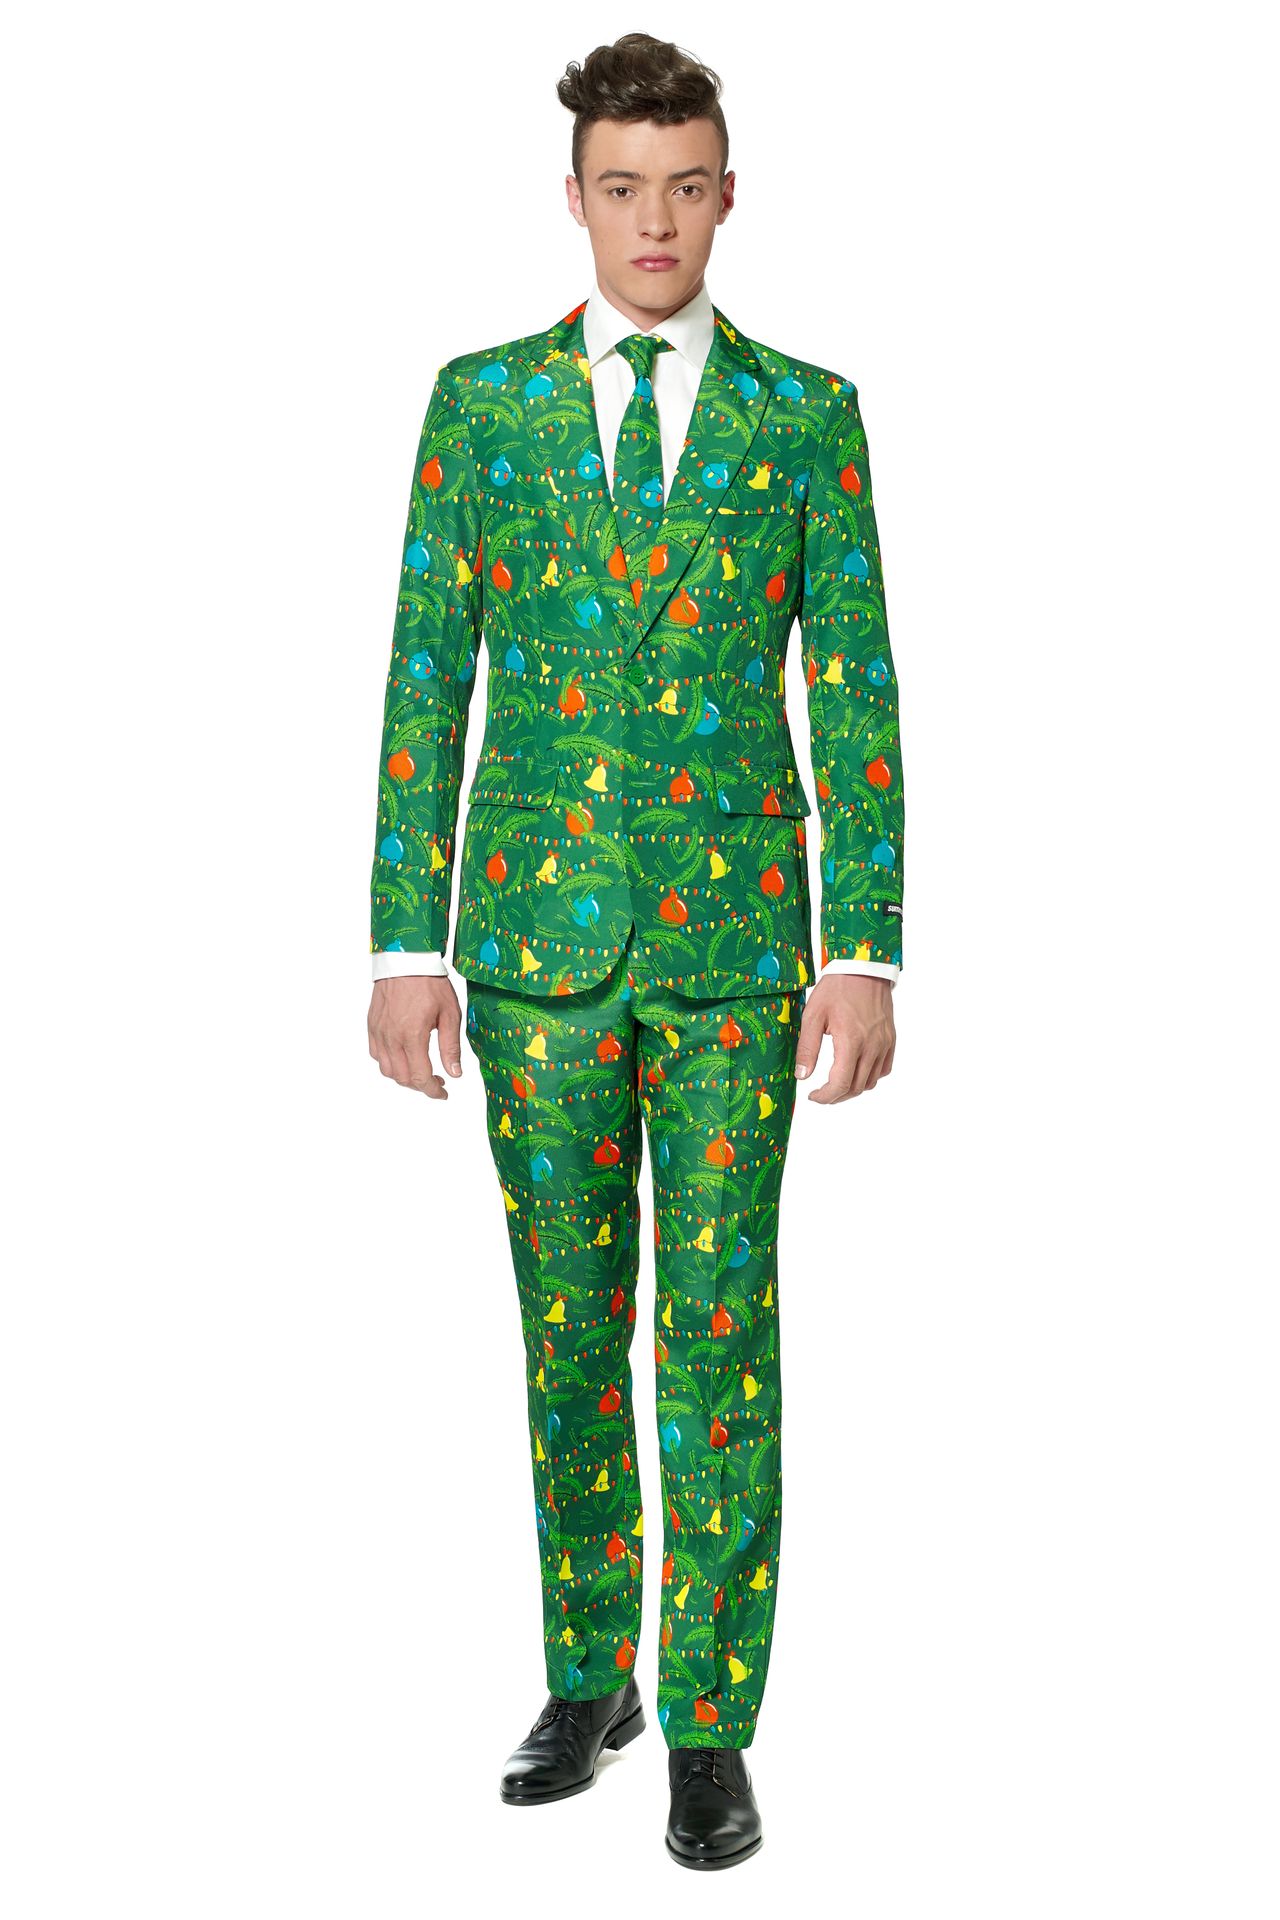 Suitmeister Kerstboom groen kostuum